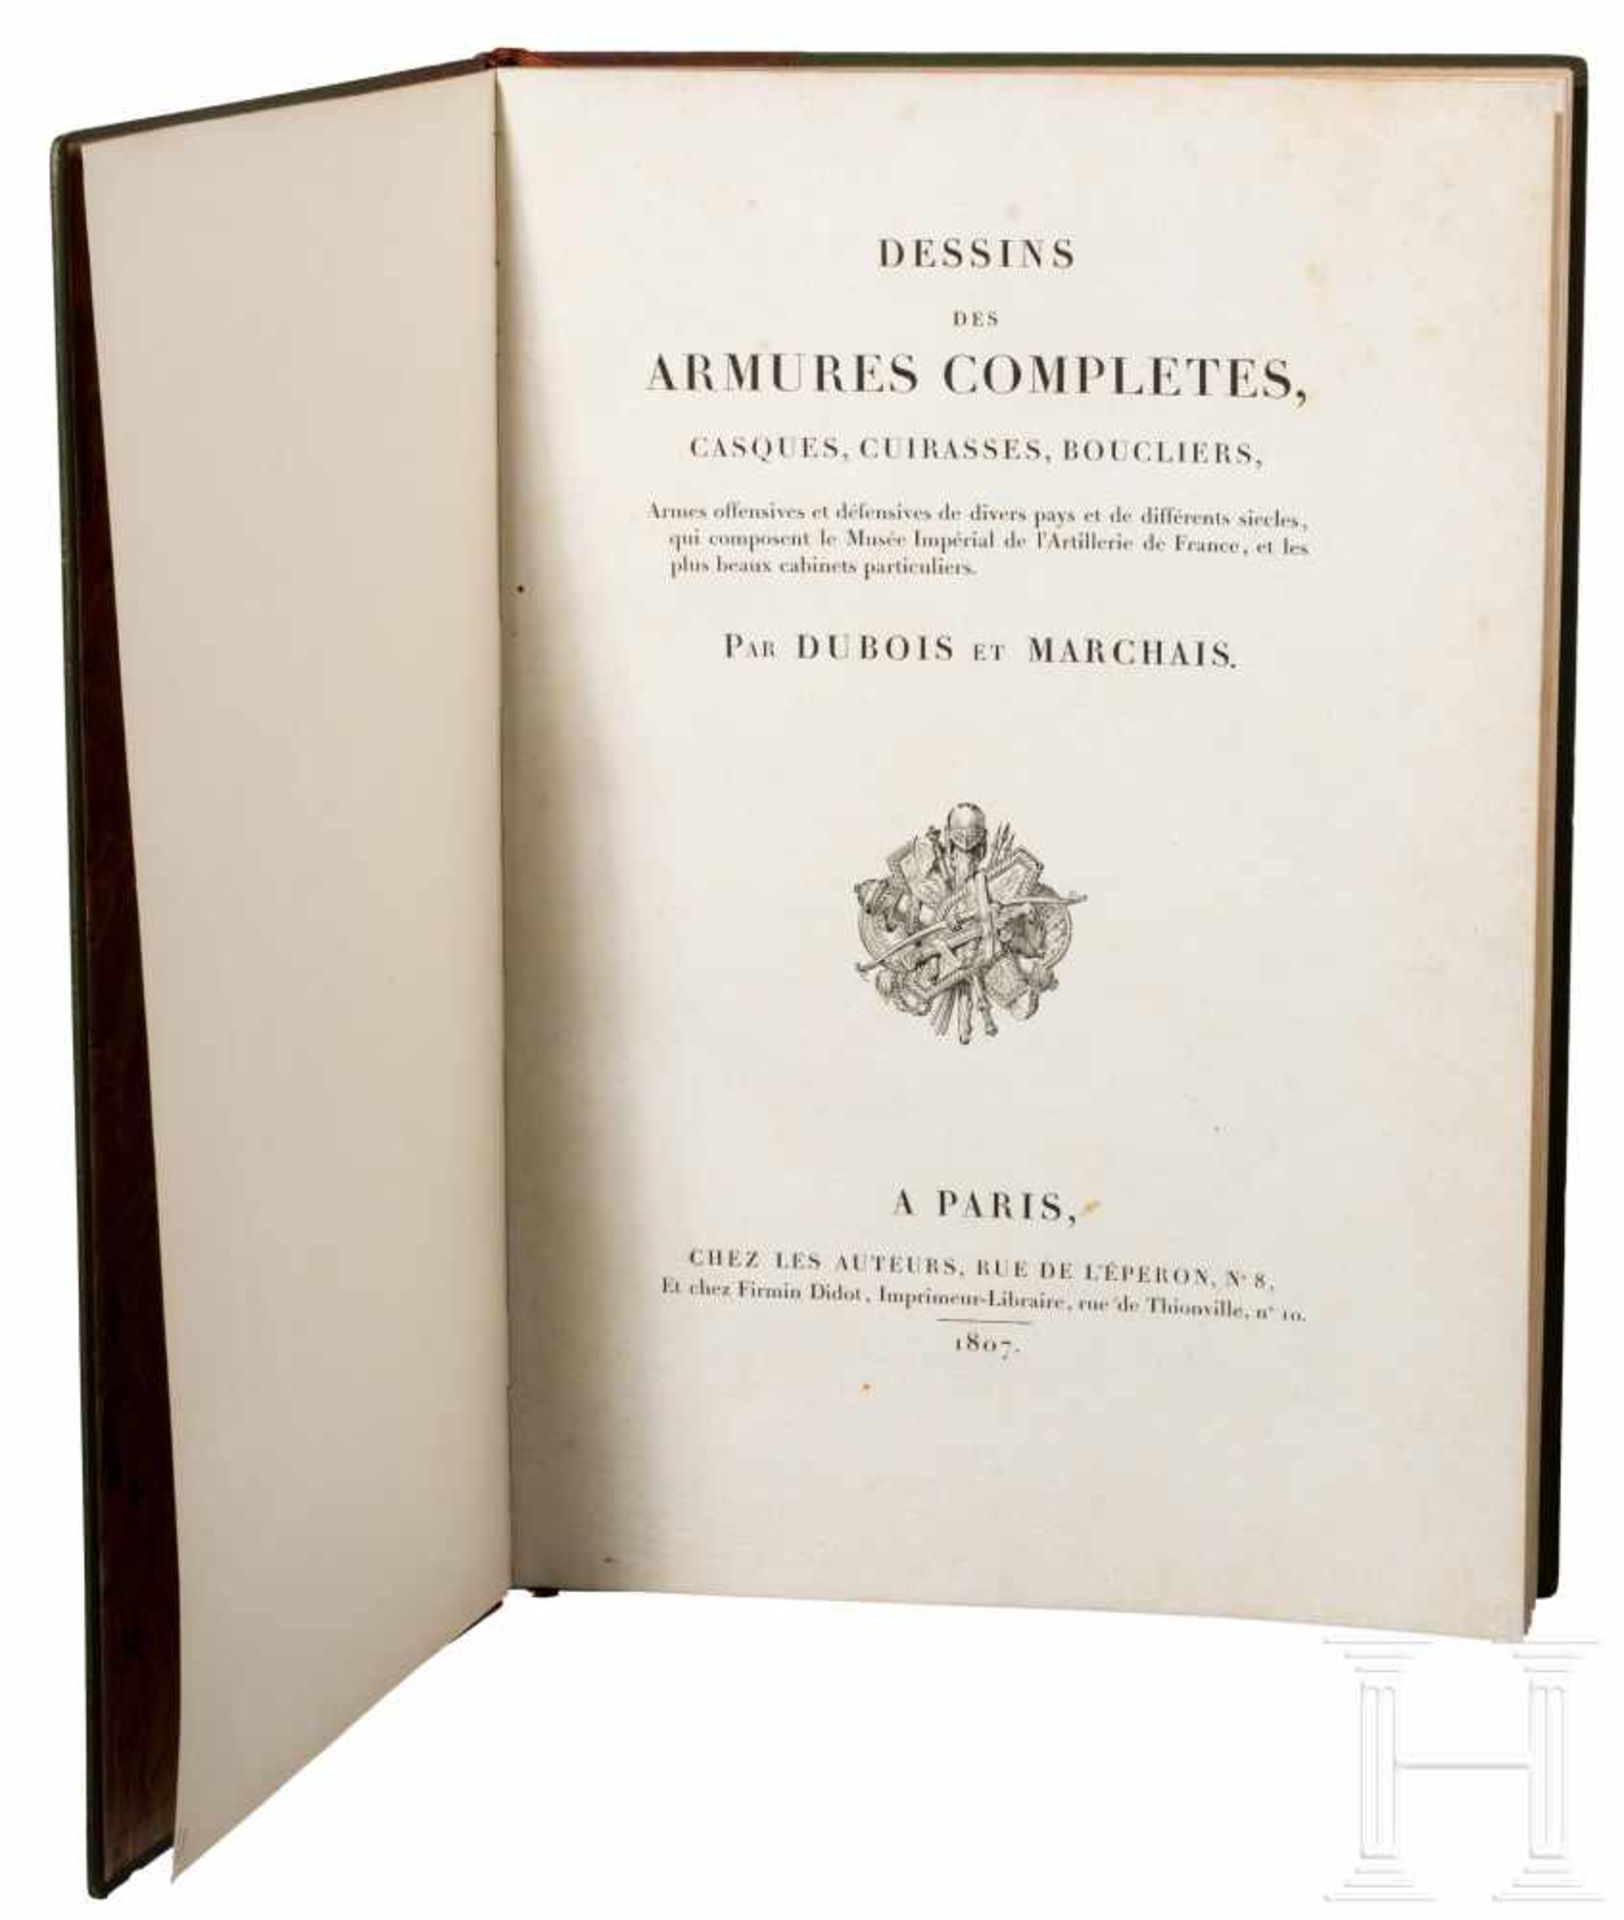 Dubois/Marchais, "Dessins des Armures", Paris, 1807"Dessins des Armures complètes, casques,